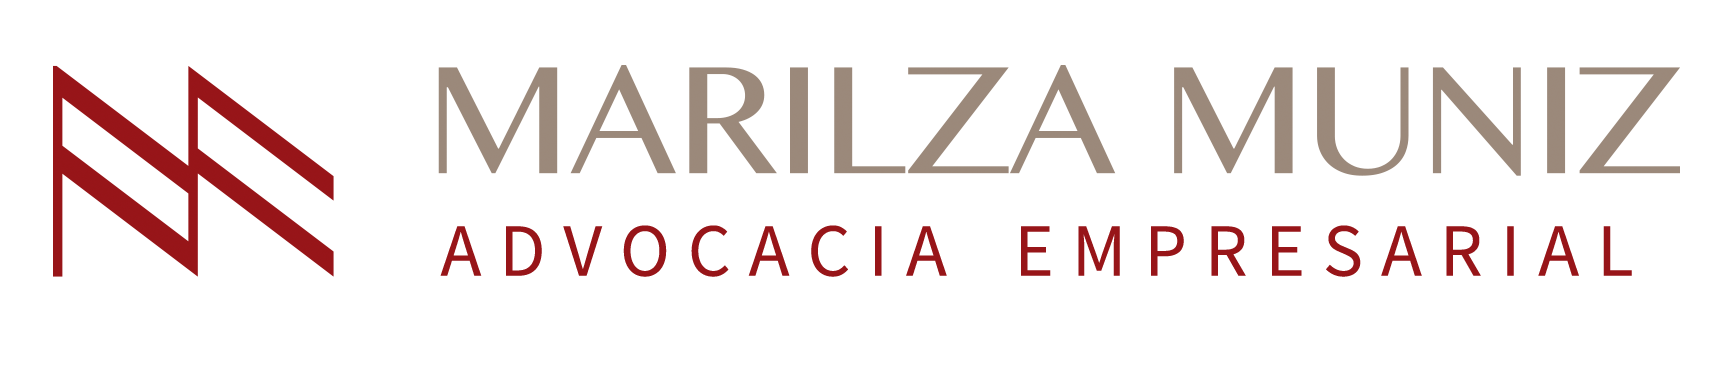 Marilza_assinaturas-2 empresarial